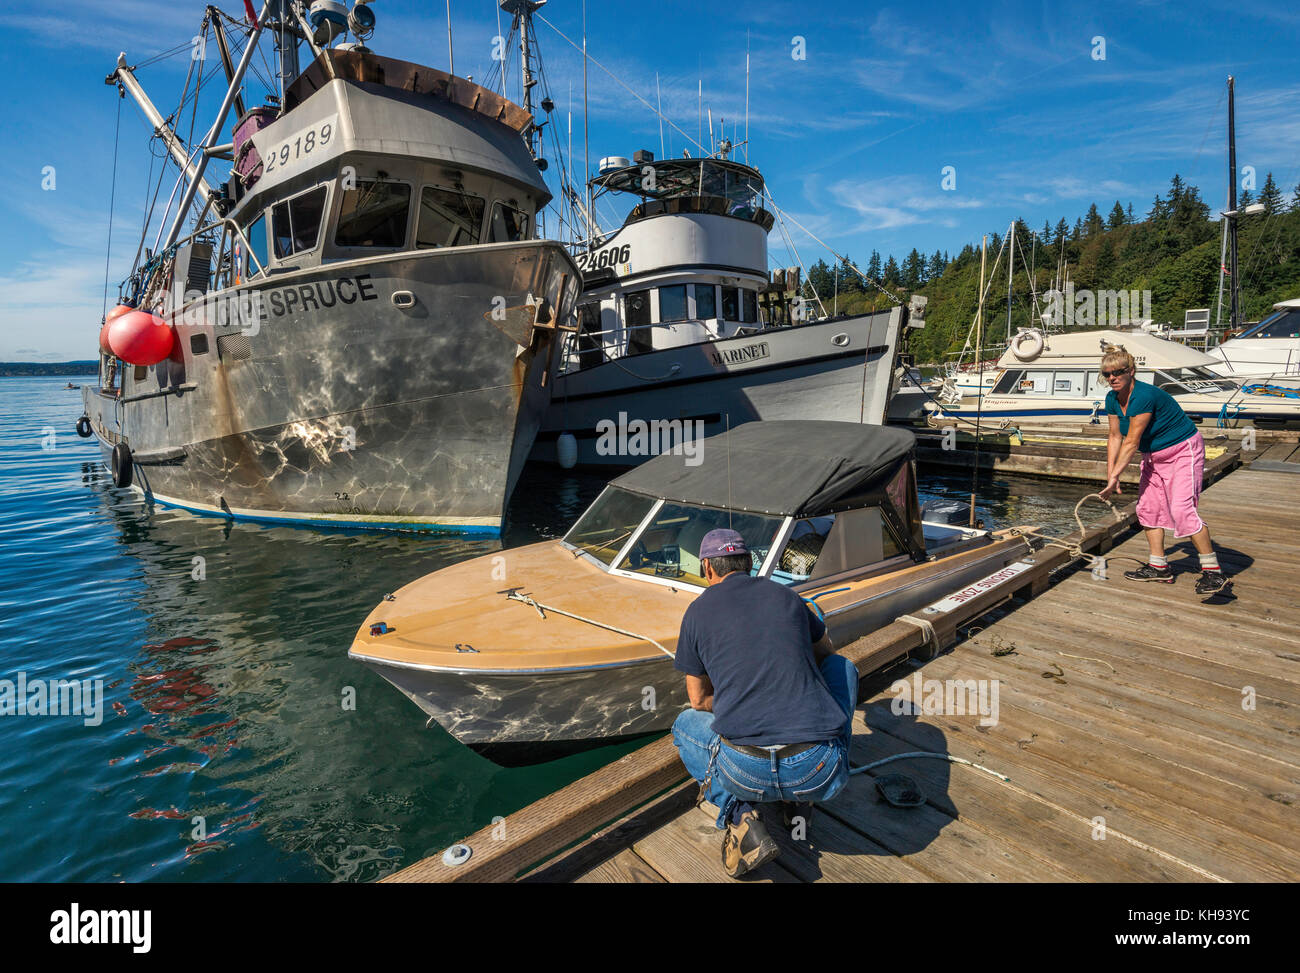 Mann und Frau binden Boot auf dem Steg, Fischerboote, die am Yachthafen in Quathiaski Cove auf Quadra Island, Vancouver Island, British Columbia, Angelehnt sind, Können Stockfoto